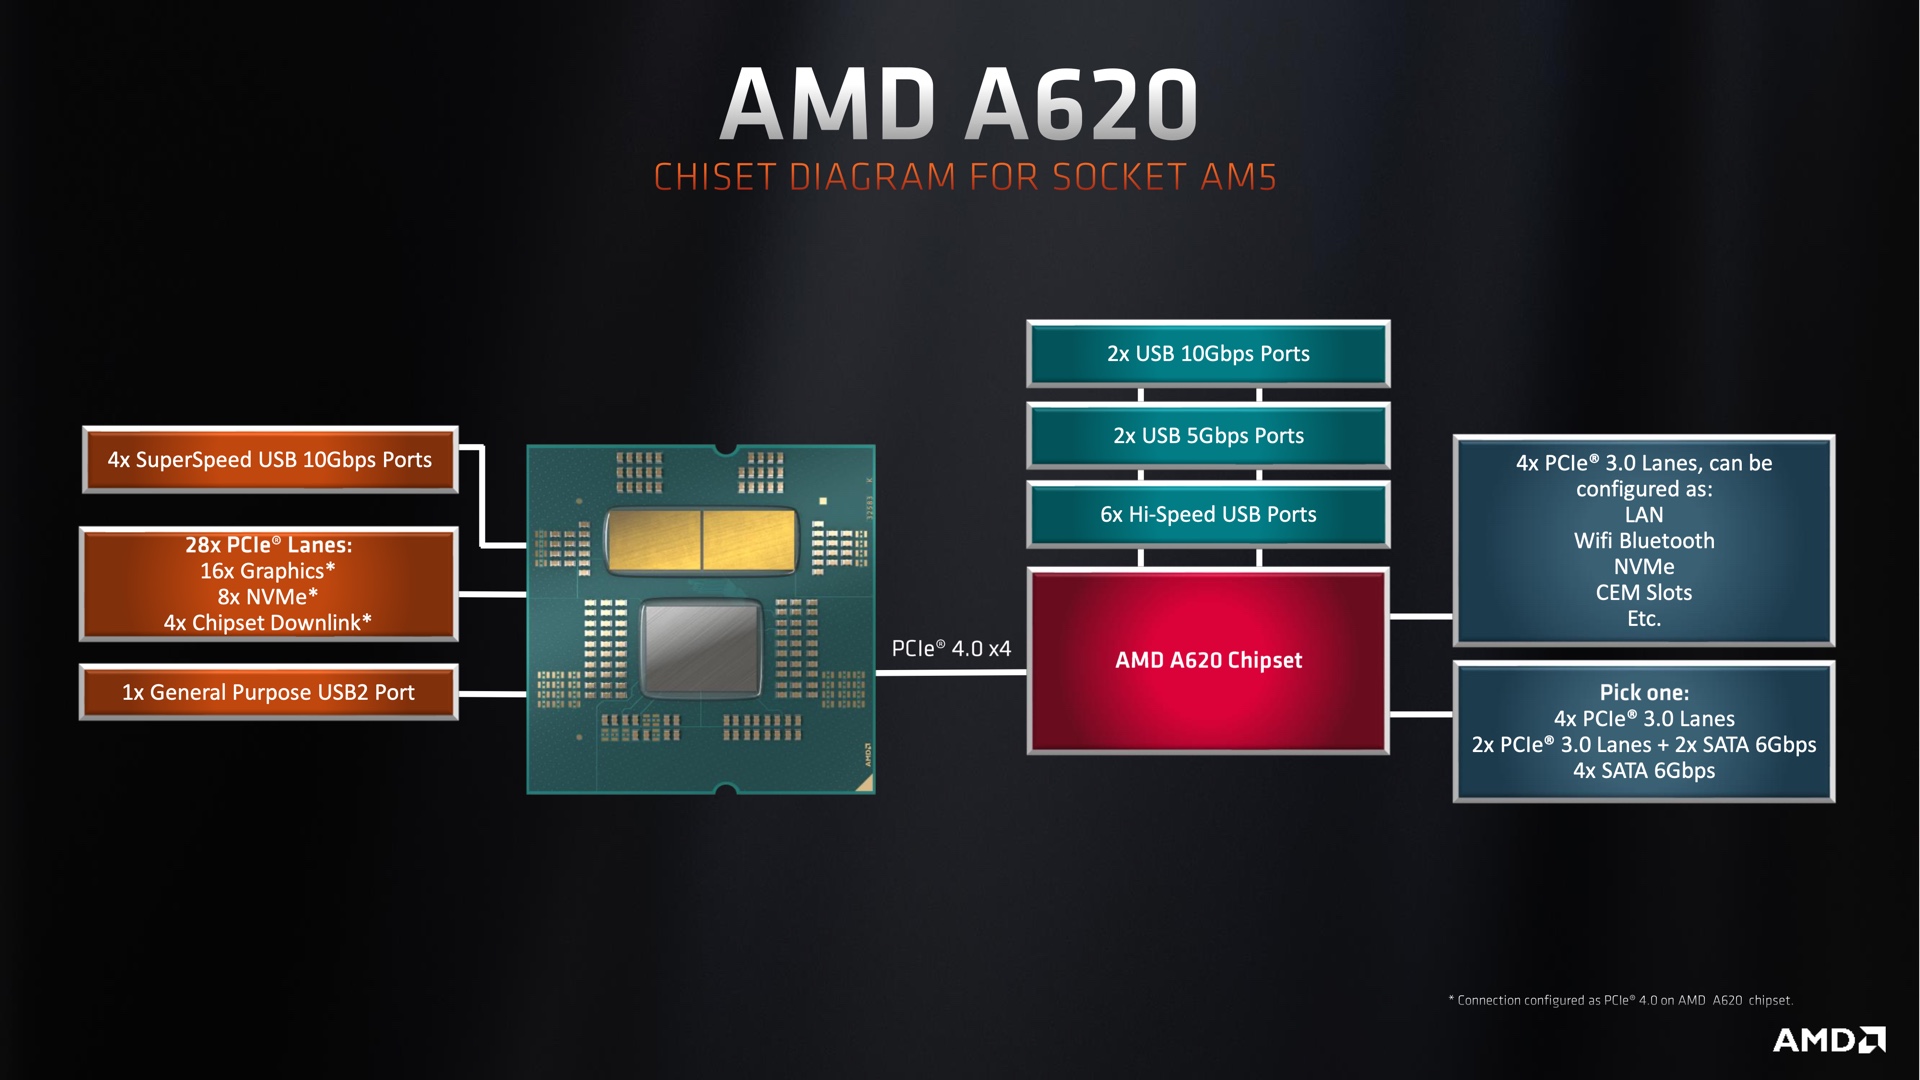 Az A620 lapkakészletek kevesebb (és lassabb) USB -port -opcióval rendelkeznek, és a PCI 3.0 sebességet használják bármilyen további M.2 tárolóhelyhez. Egyetlen PCIe 4.0 SSD slot és egy PCIe 4.0 GPU slot továbbra is támogatott a CPU -nak köszönhetően